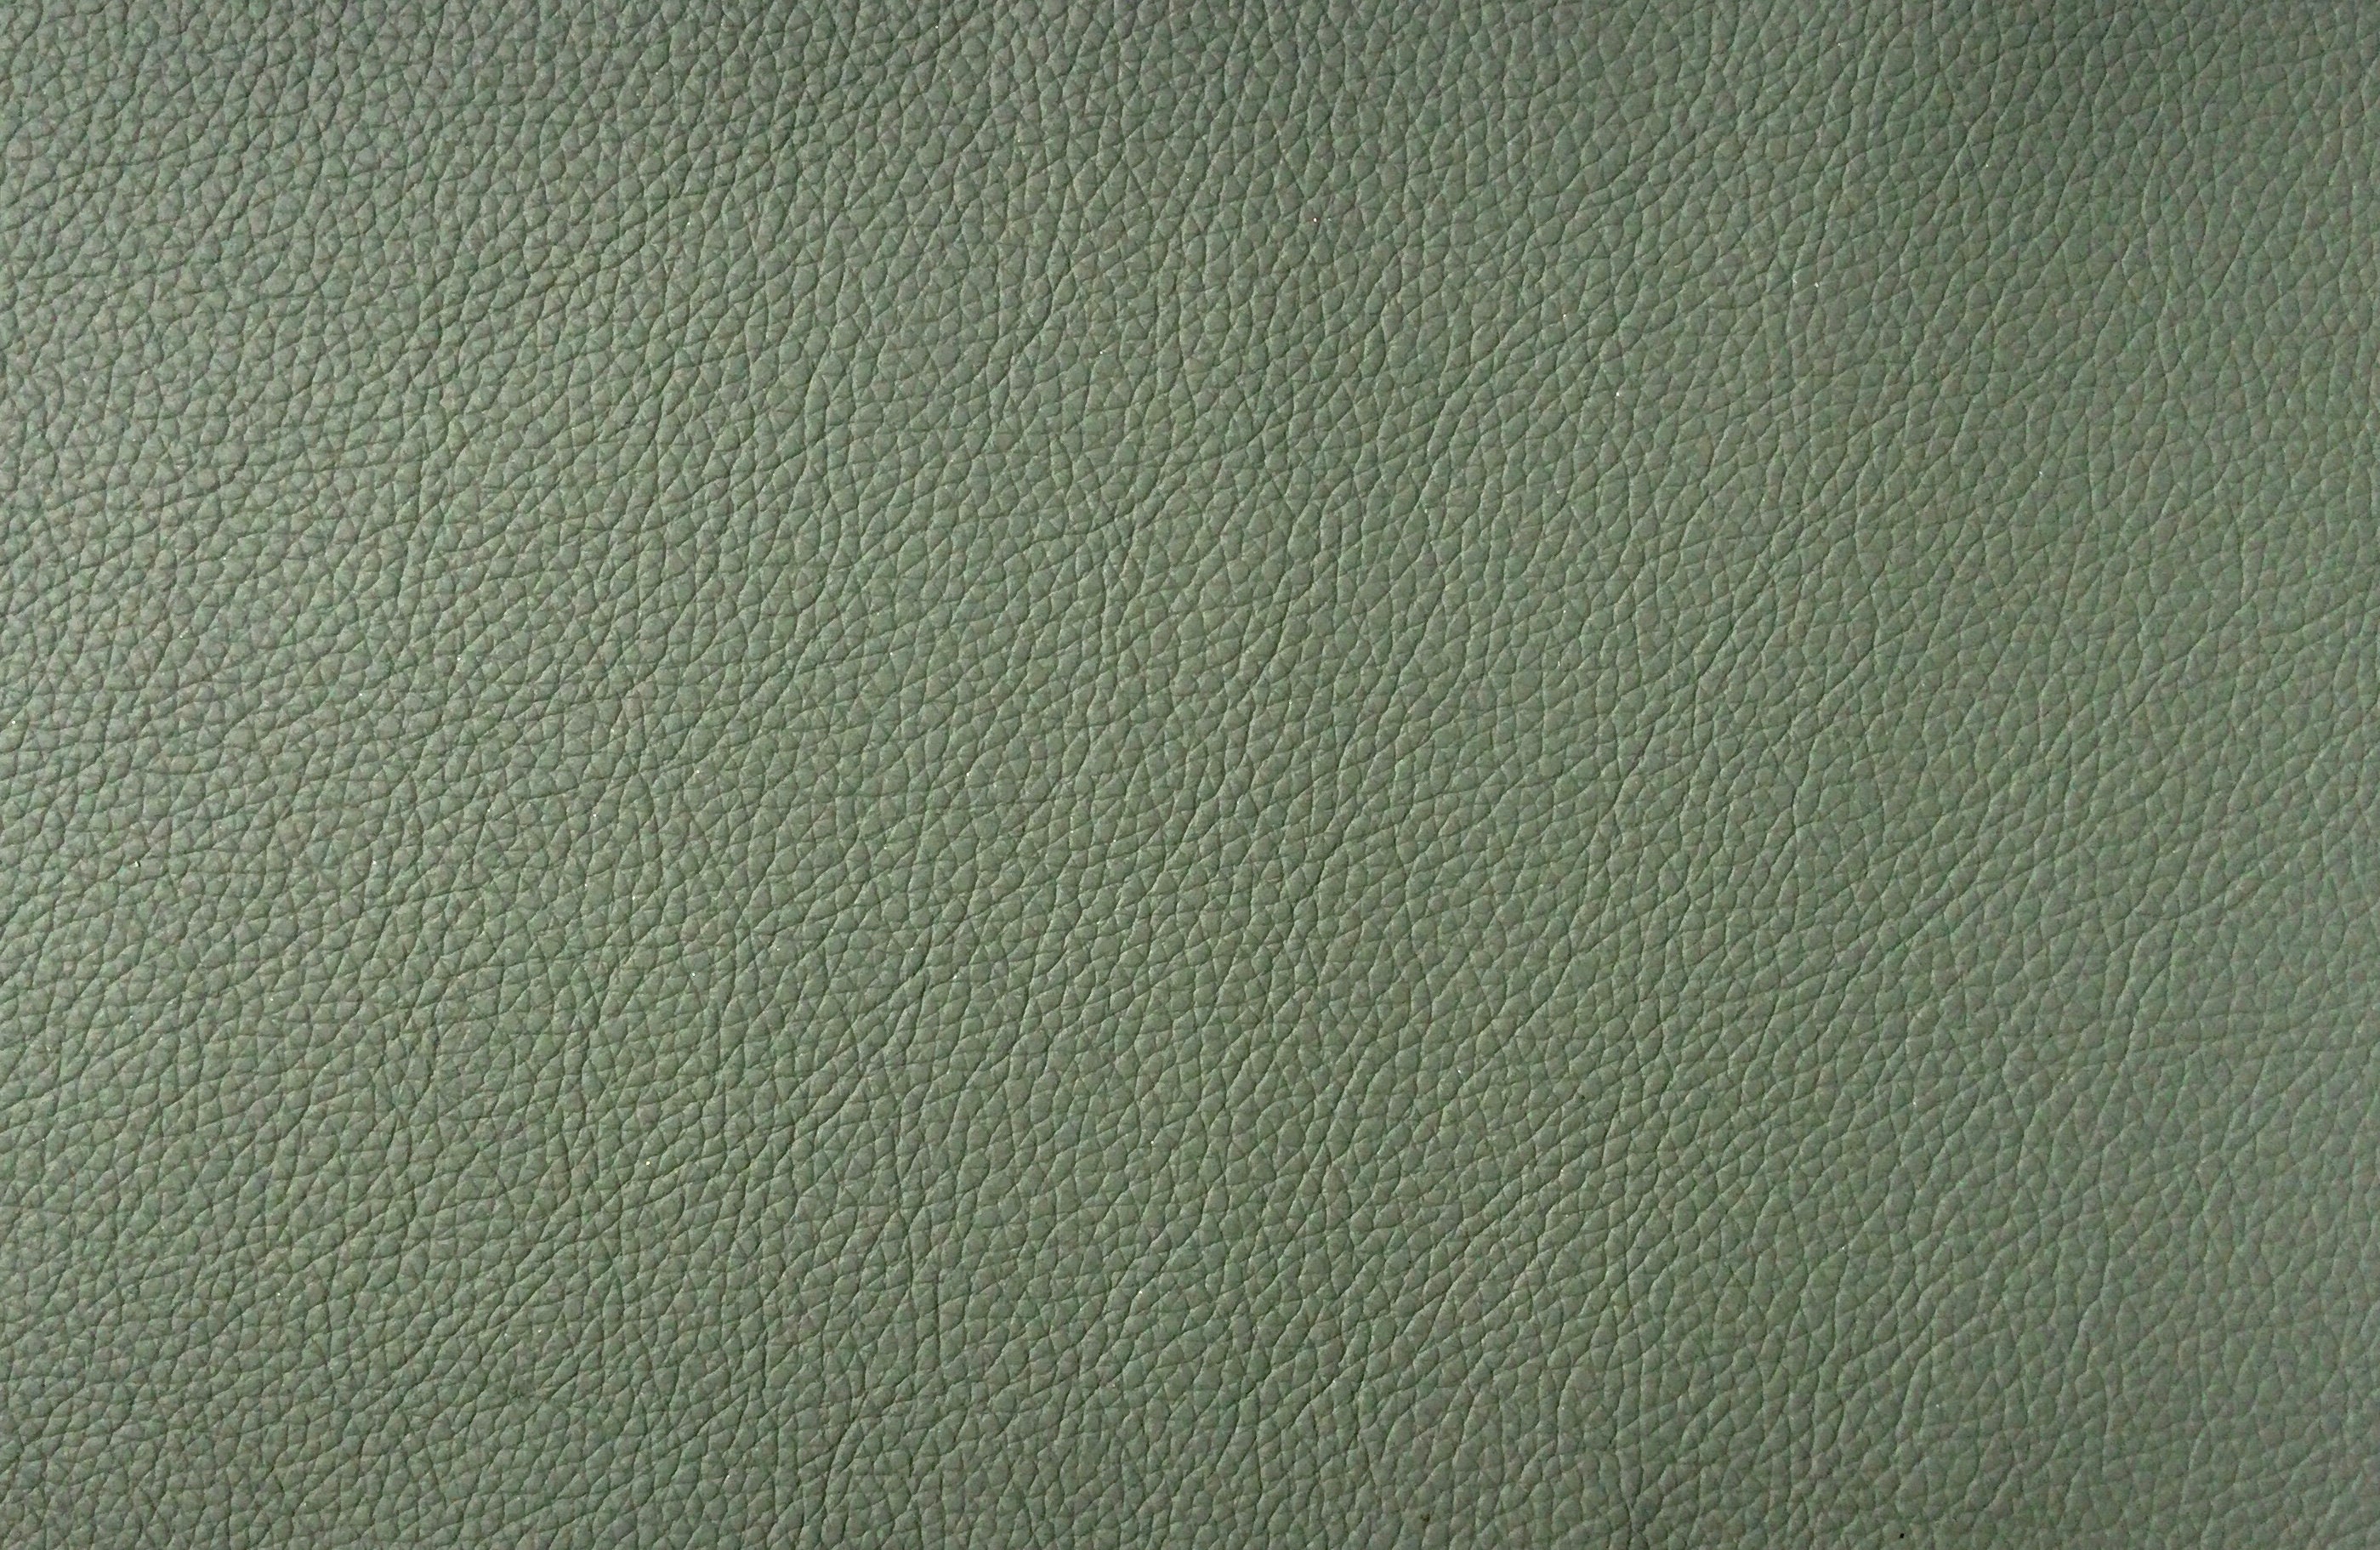 CraftsFabrics 7pcs 8x12 Floral PVC Faux Leather Sheets Bundle A4